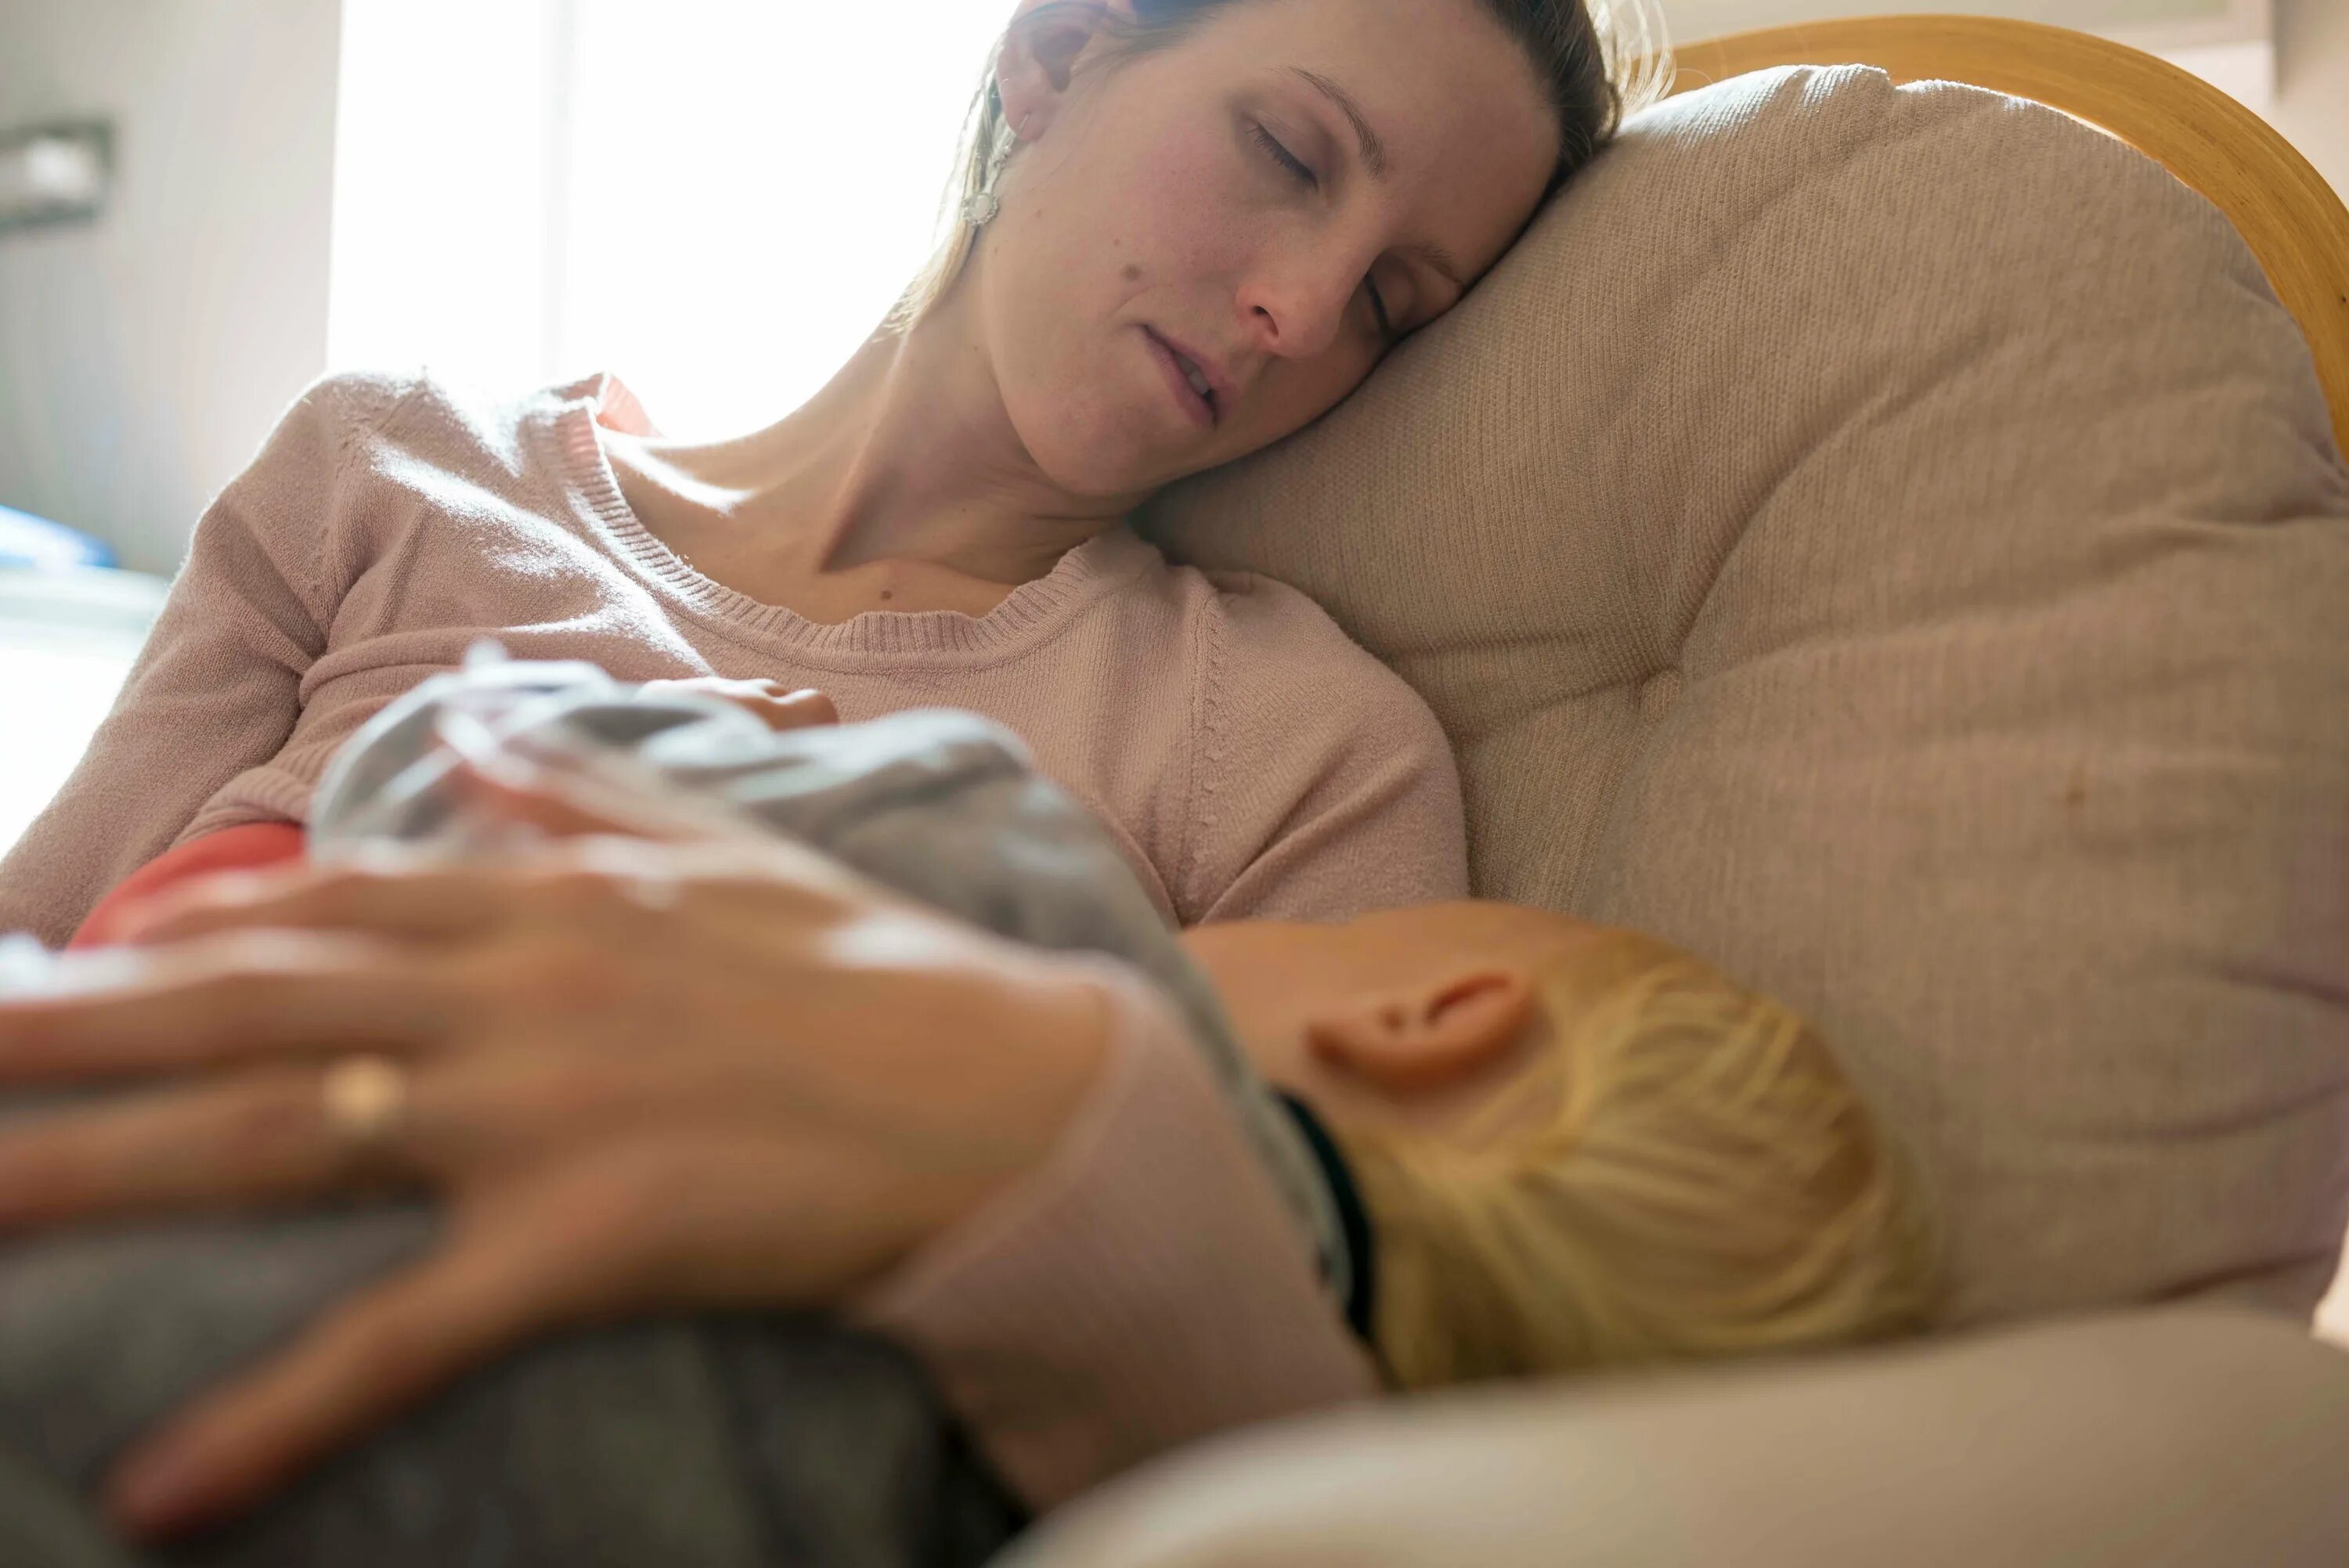 Real sleeping mom. Молодые родители и сон. Послеродовая депрессия фото. Слип послеродовой.